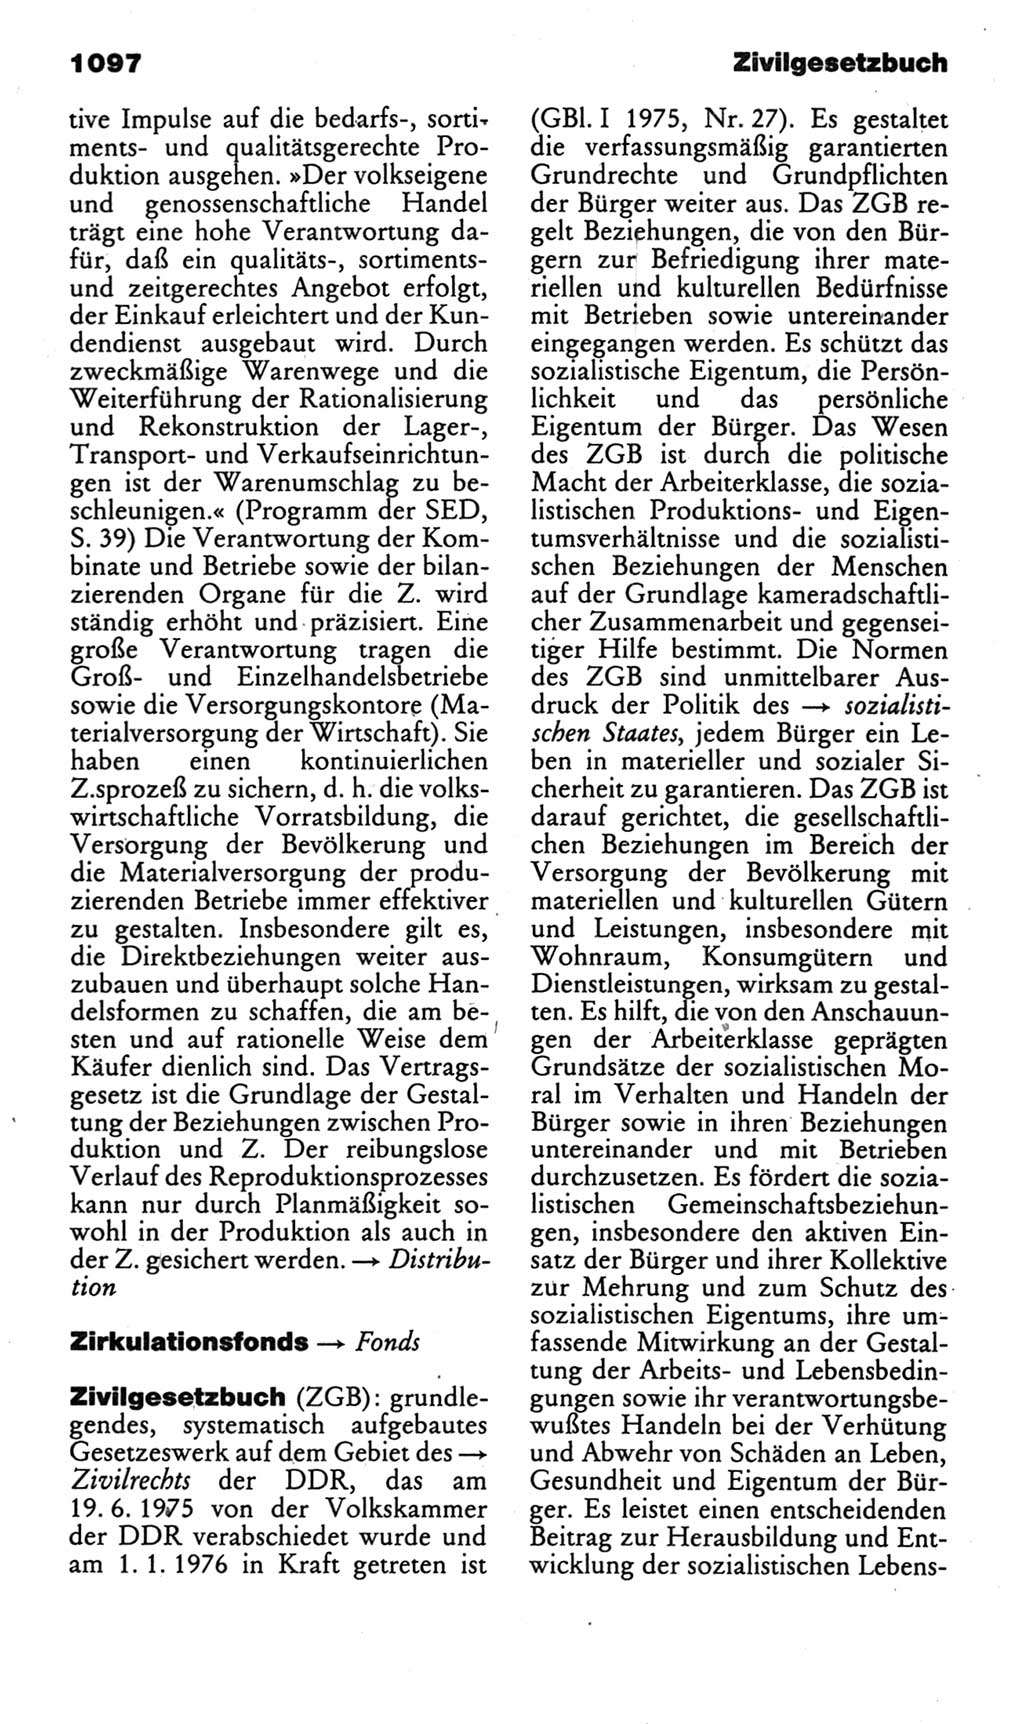 Kleines politisches Wörterbuch [Deutsche Demokratische Republik (DDR)] 1985, Seite 1097 (Kl. pol. Wb. DDR 1985, S. 1097)